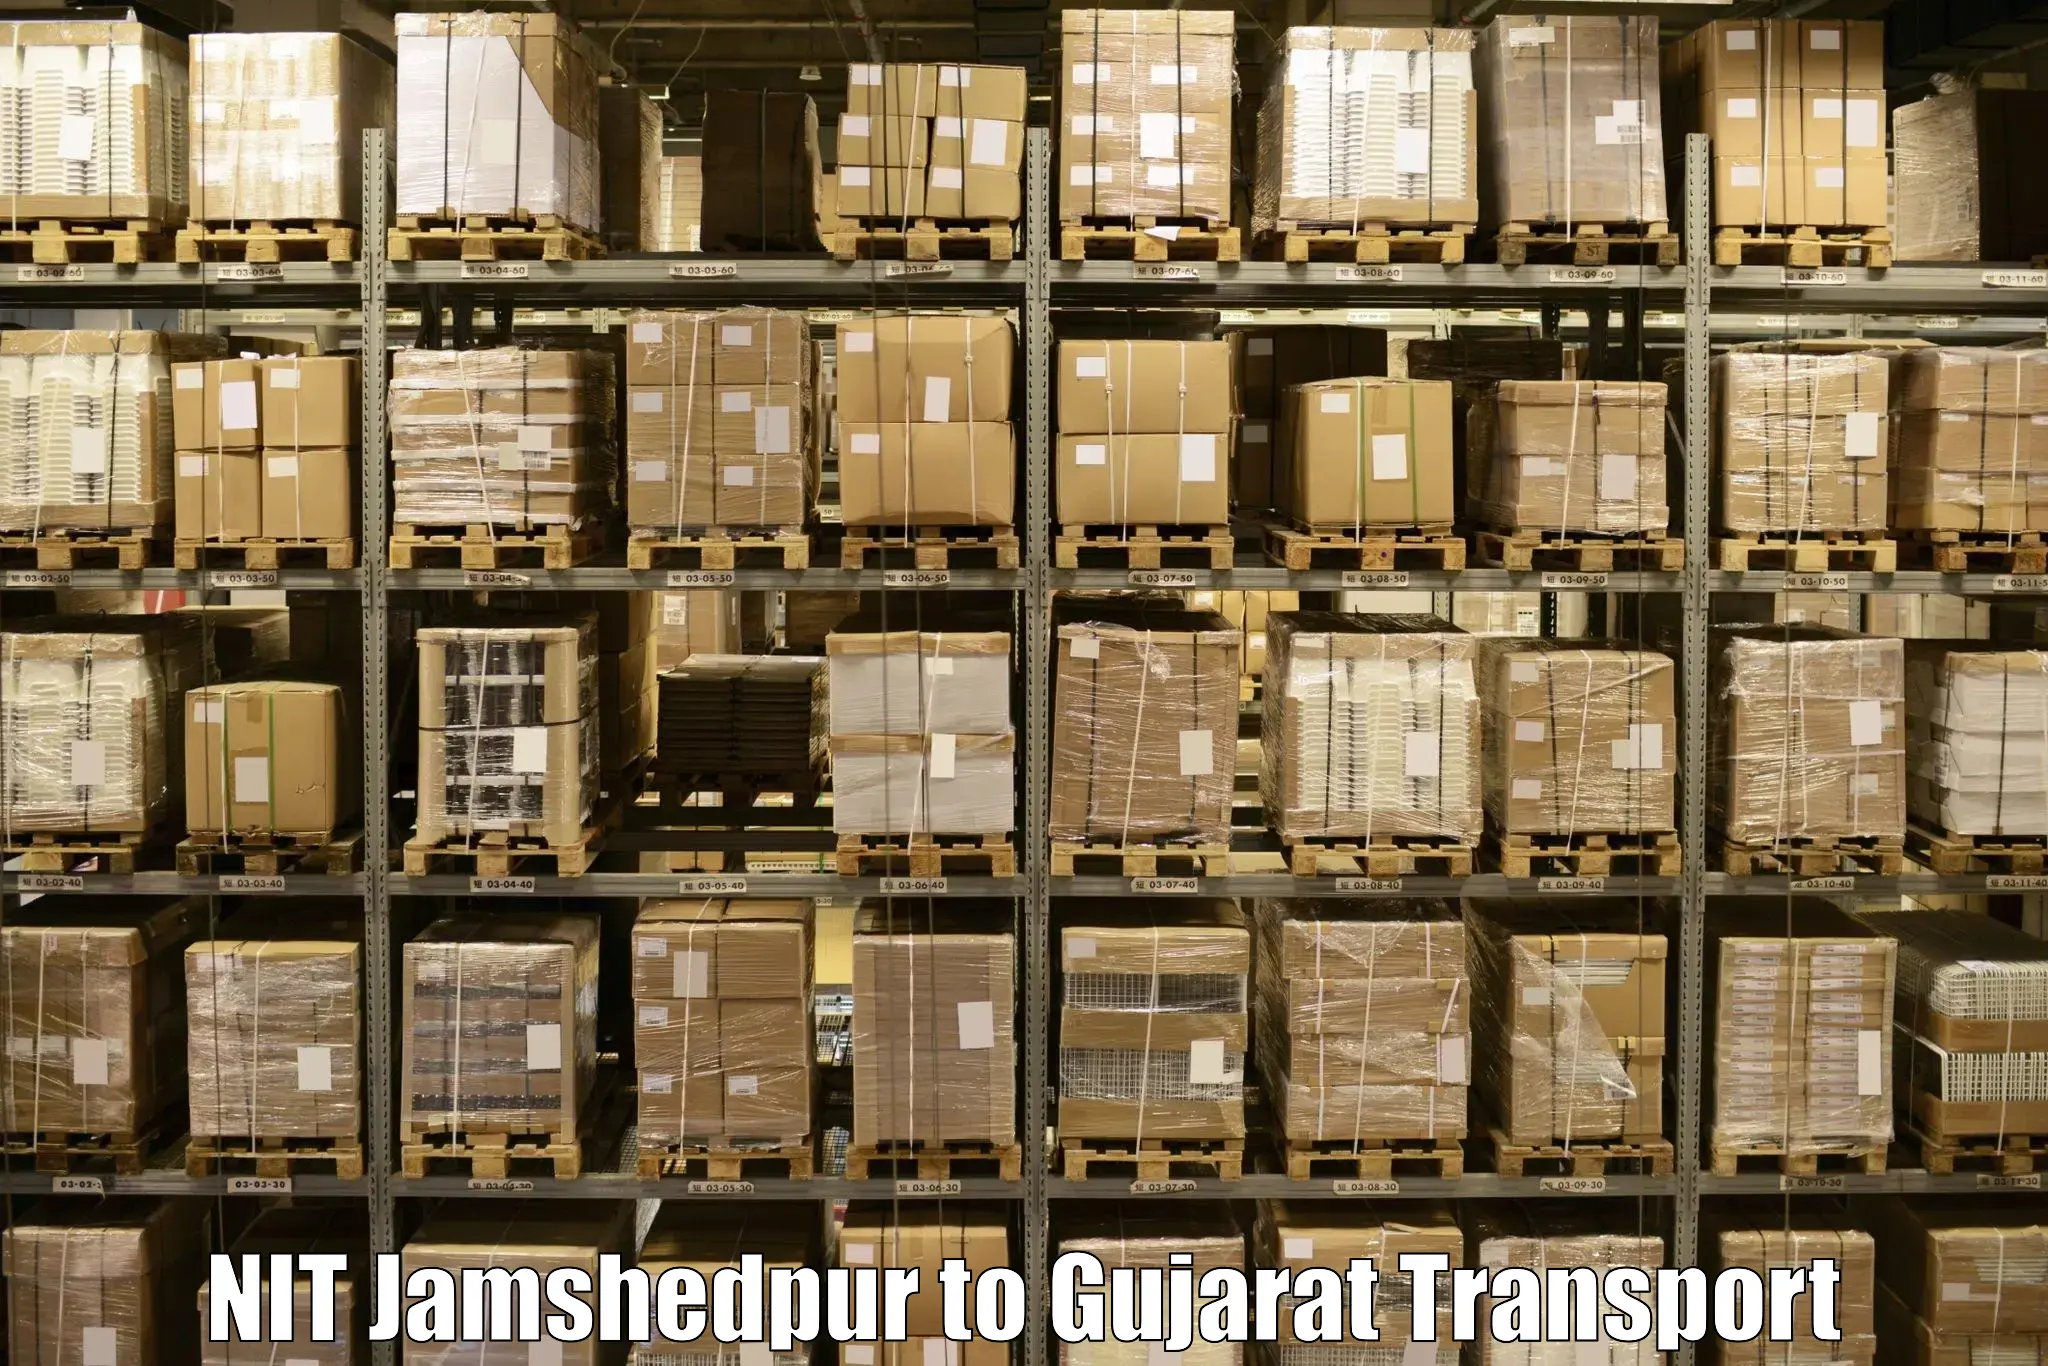 Commercial transport service NIT Jamshedpur to Kandla Port